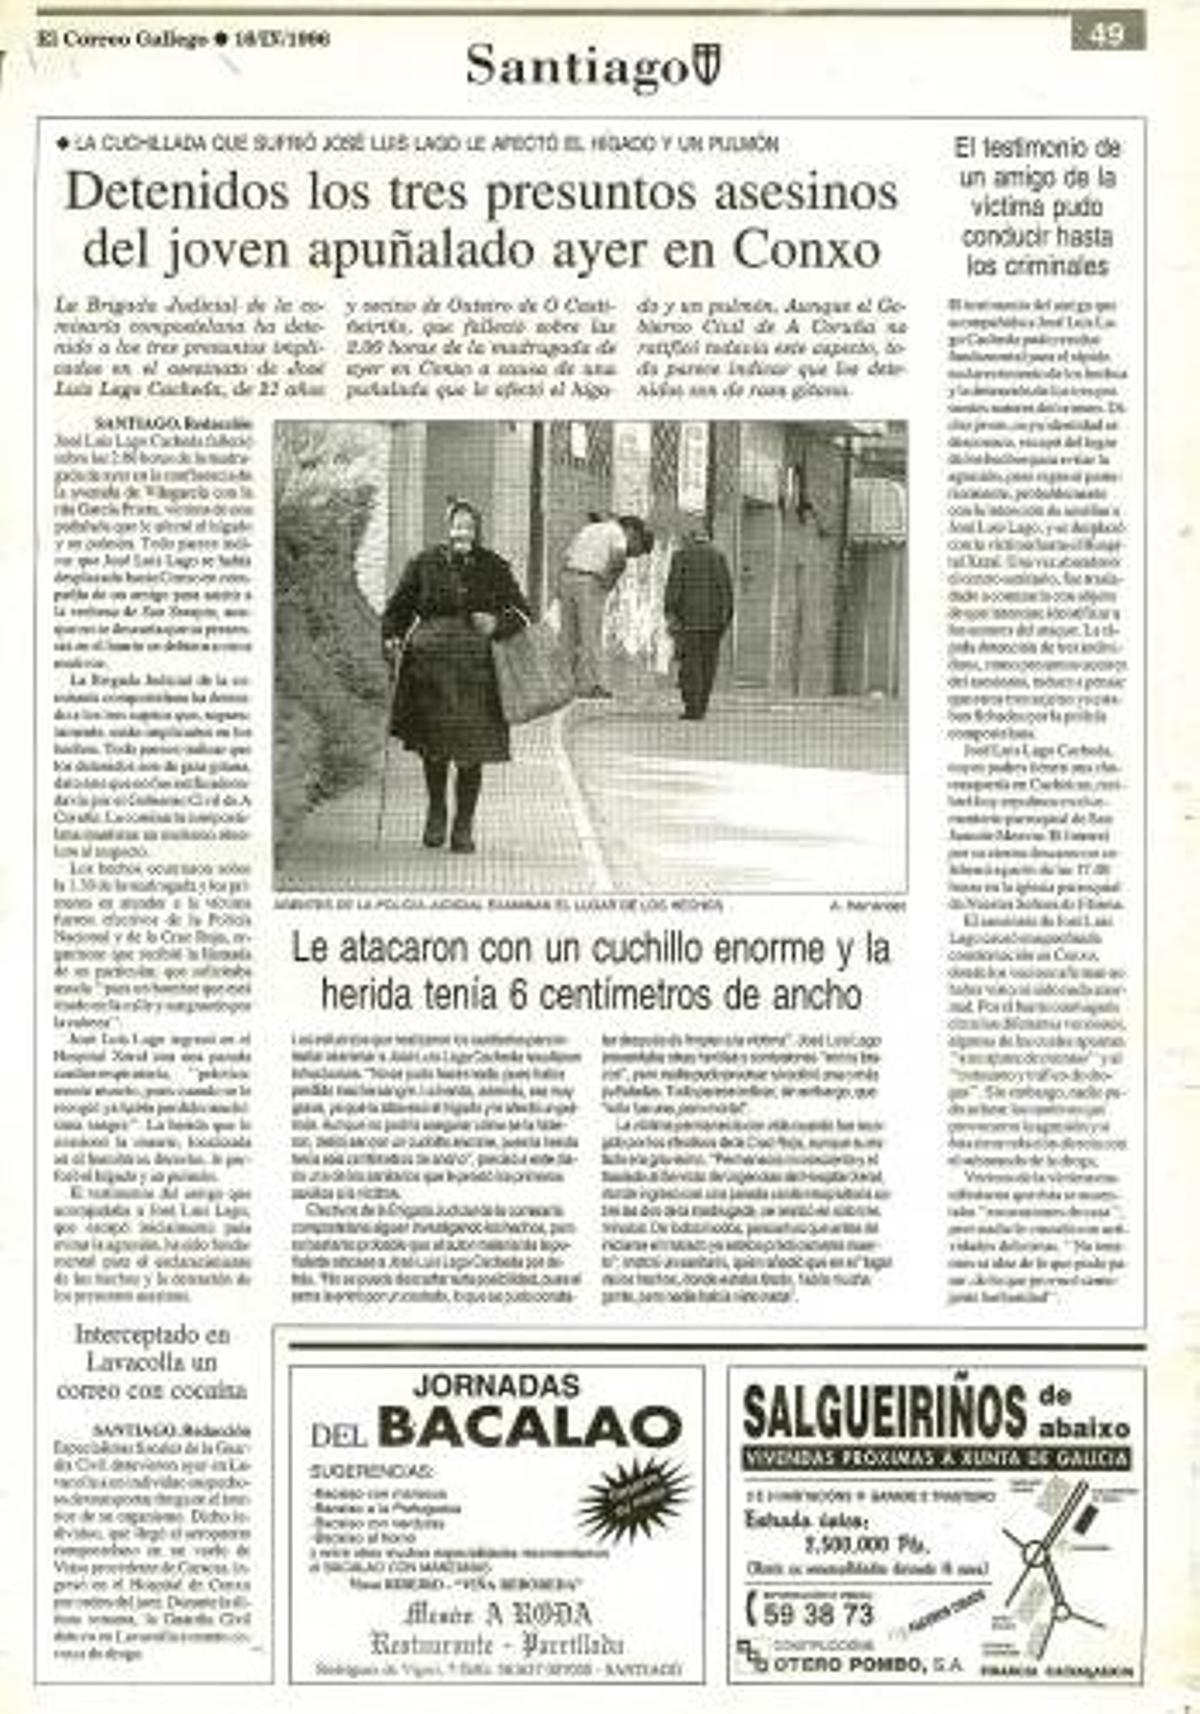 Noticia de la detención de los tres hermanos involucrados, publicada el día posterior al asesinato en El Correo Gallego